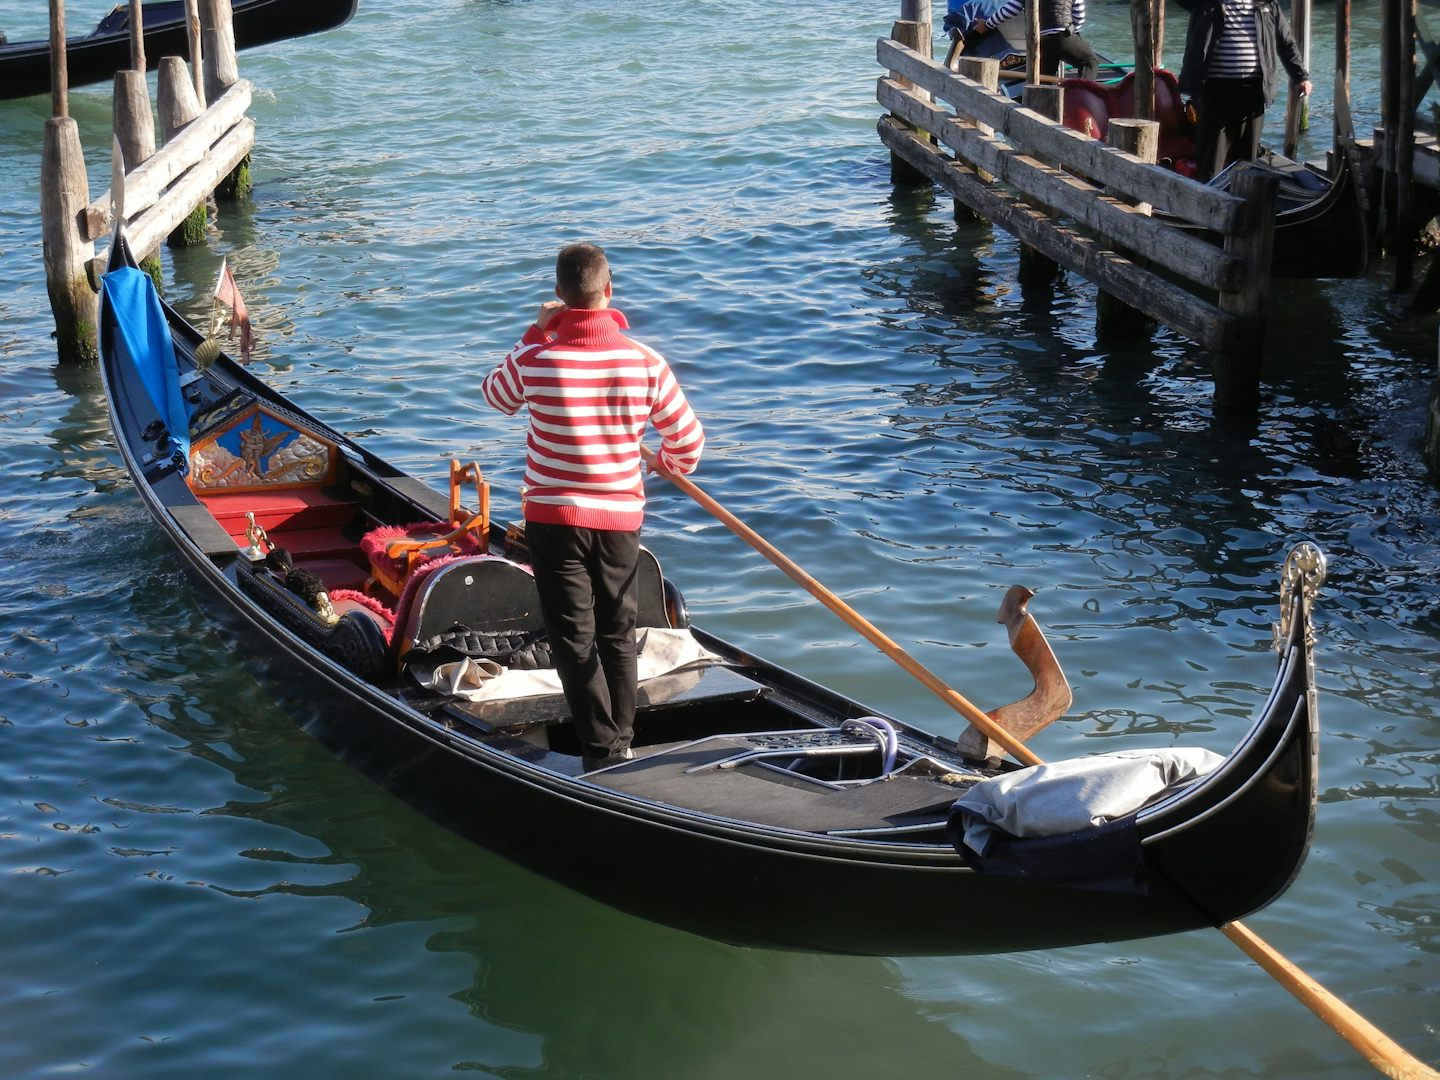 Awaiting gondola in Venice.